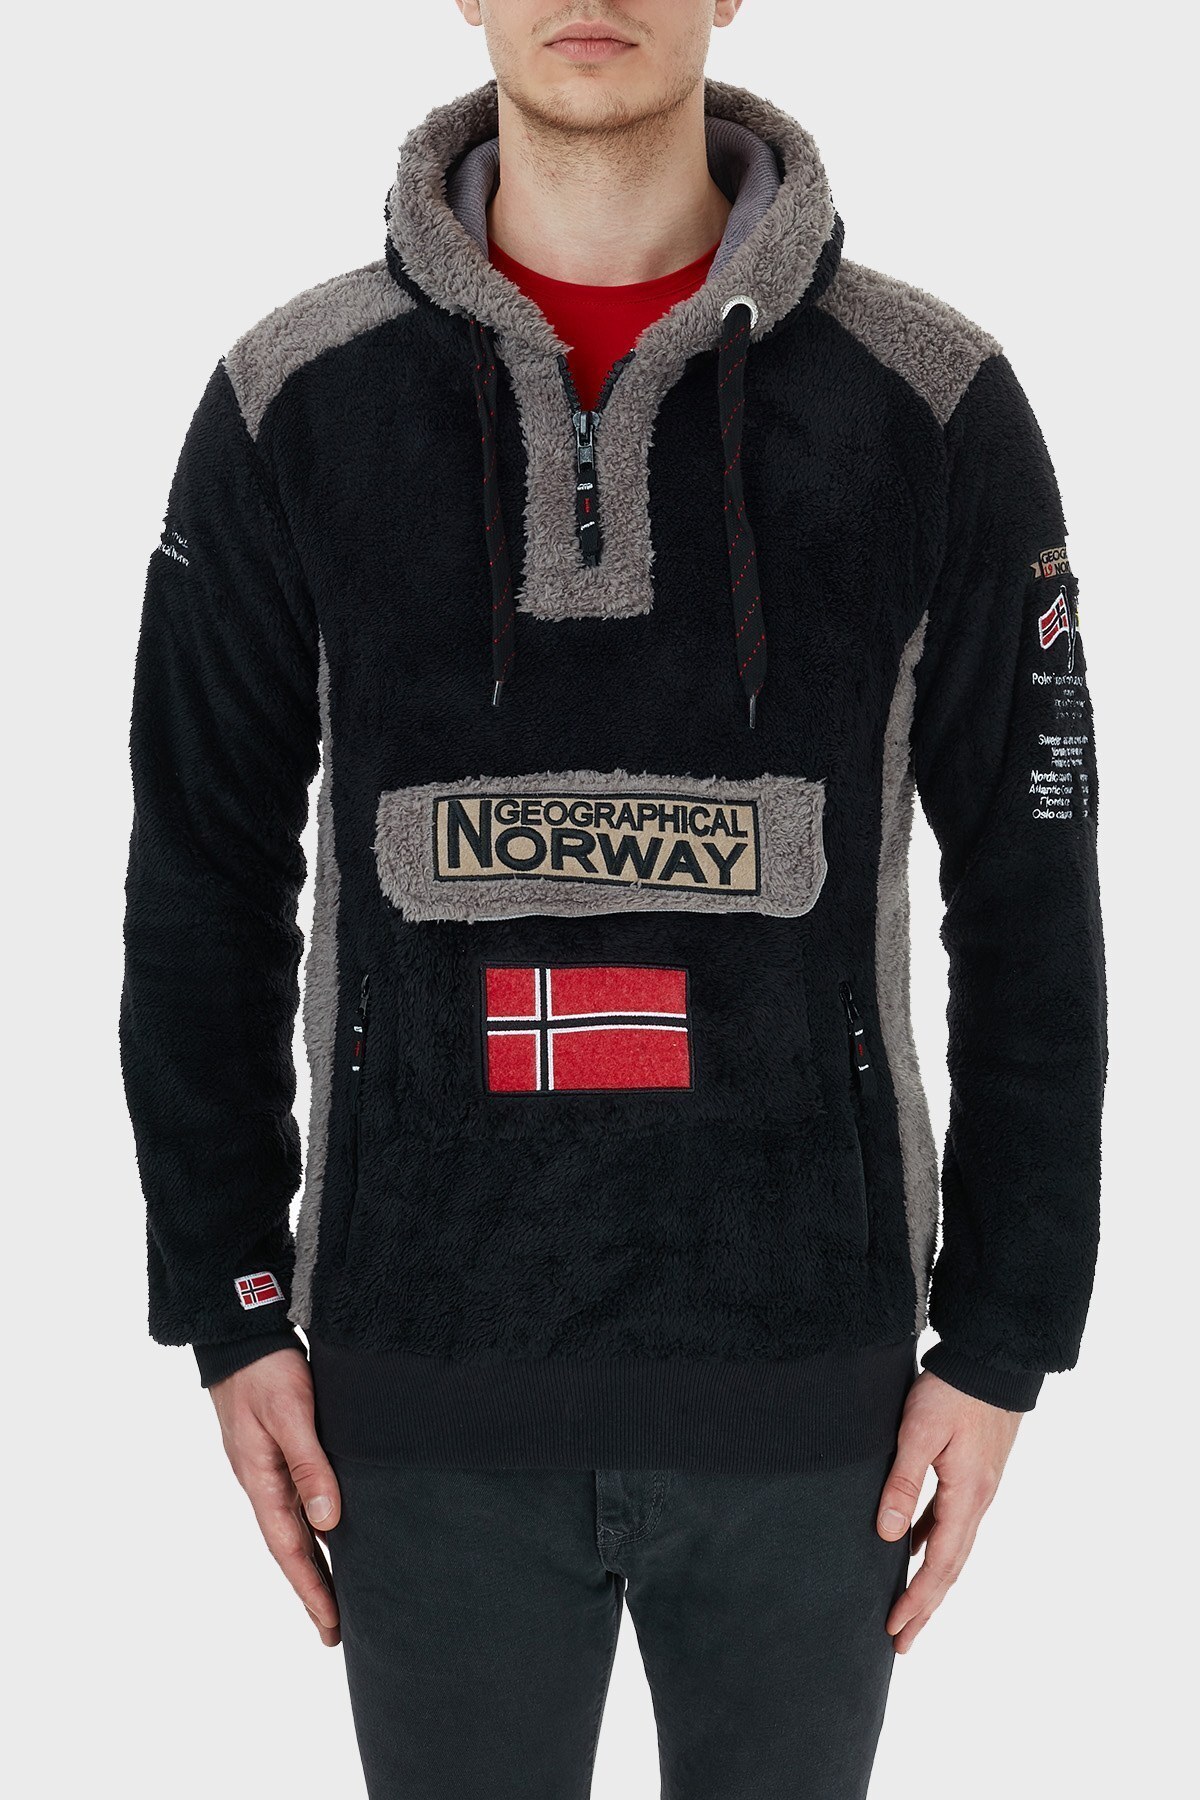 Norway Geographical Kapüşonlu Yarım Fermuarlı Outdoor Polar Erkek Sweat GYMCLASSSHERCO SİYAH